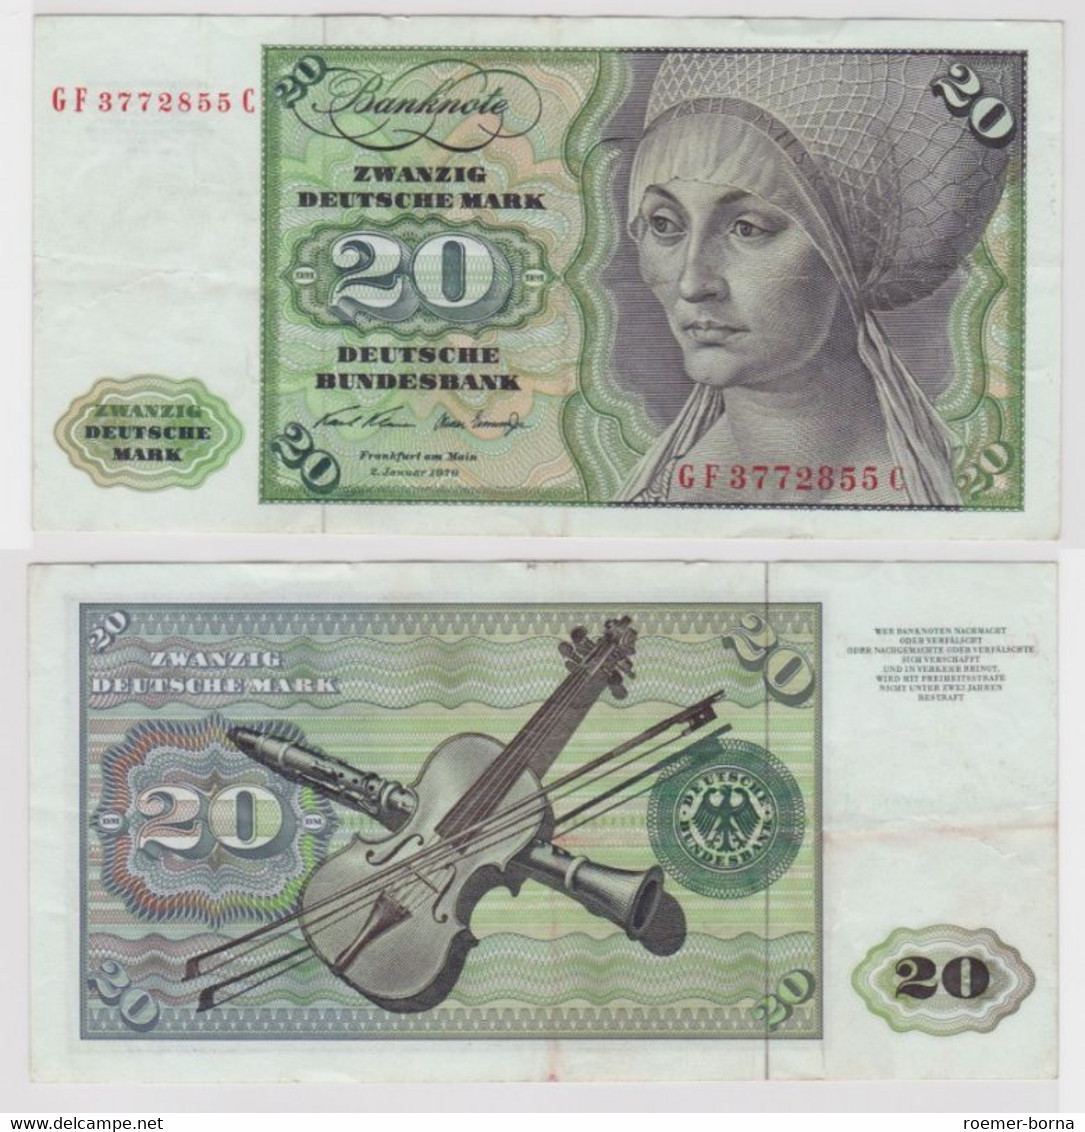 T144592 Banknote 20 DM Deutsche Mark Ro. 271b Schein 2.Jan. 1970 KN GF 3772855 C - 20 Deutsche Mark